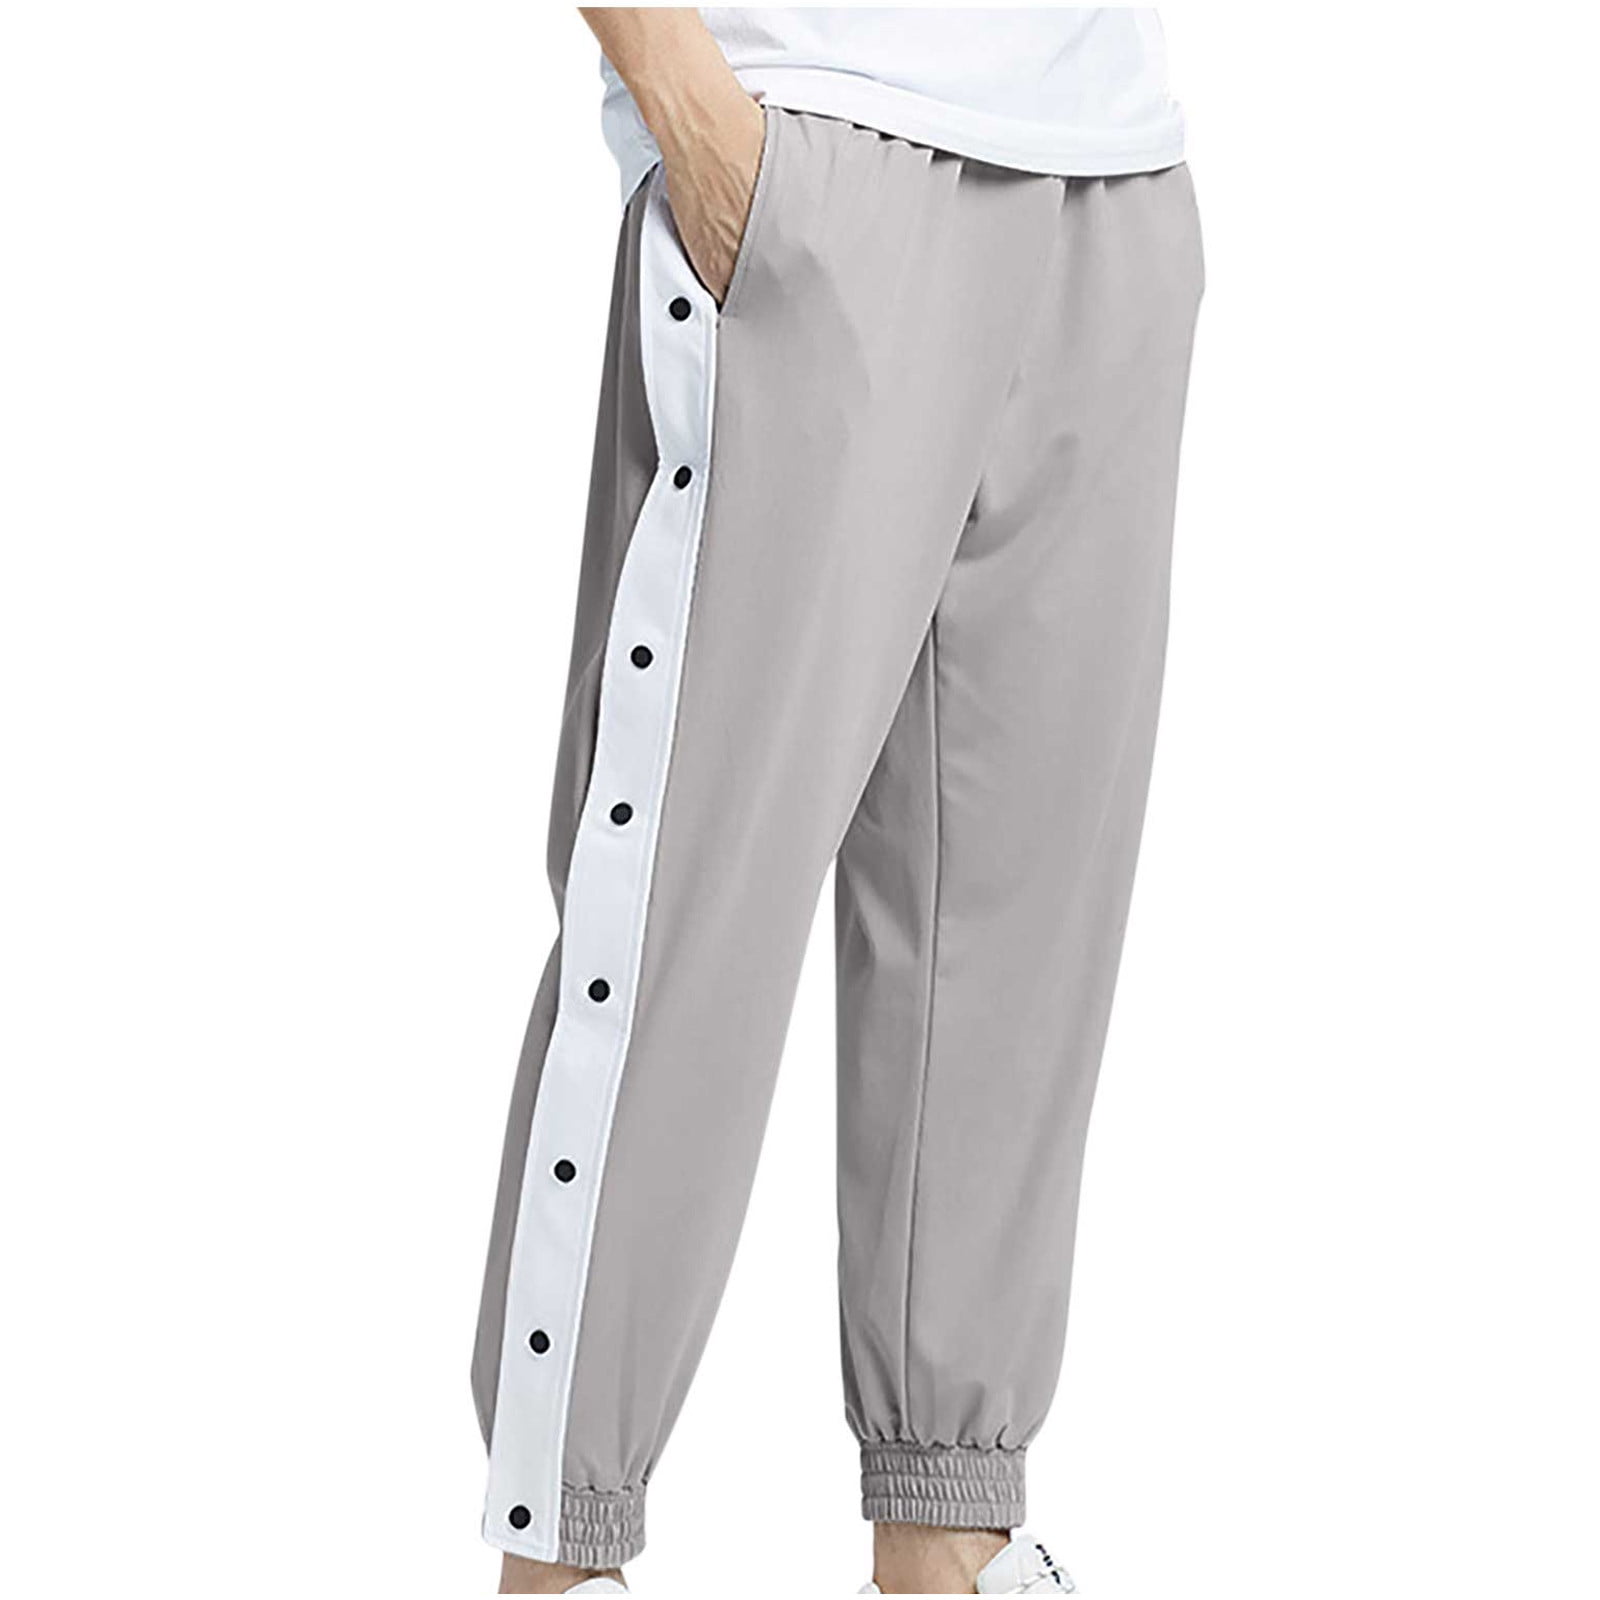 Fear Of God x Nike Warm Up Pants - String | Points Streetwear Store |  Brisbane